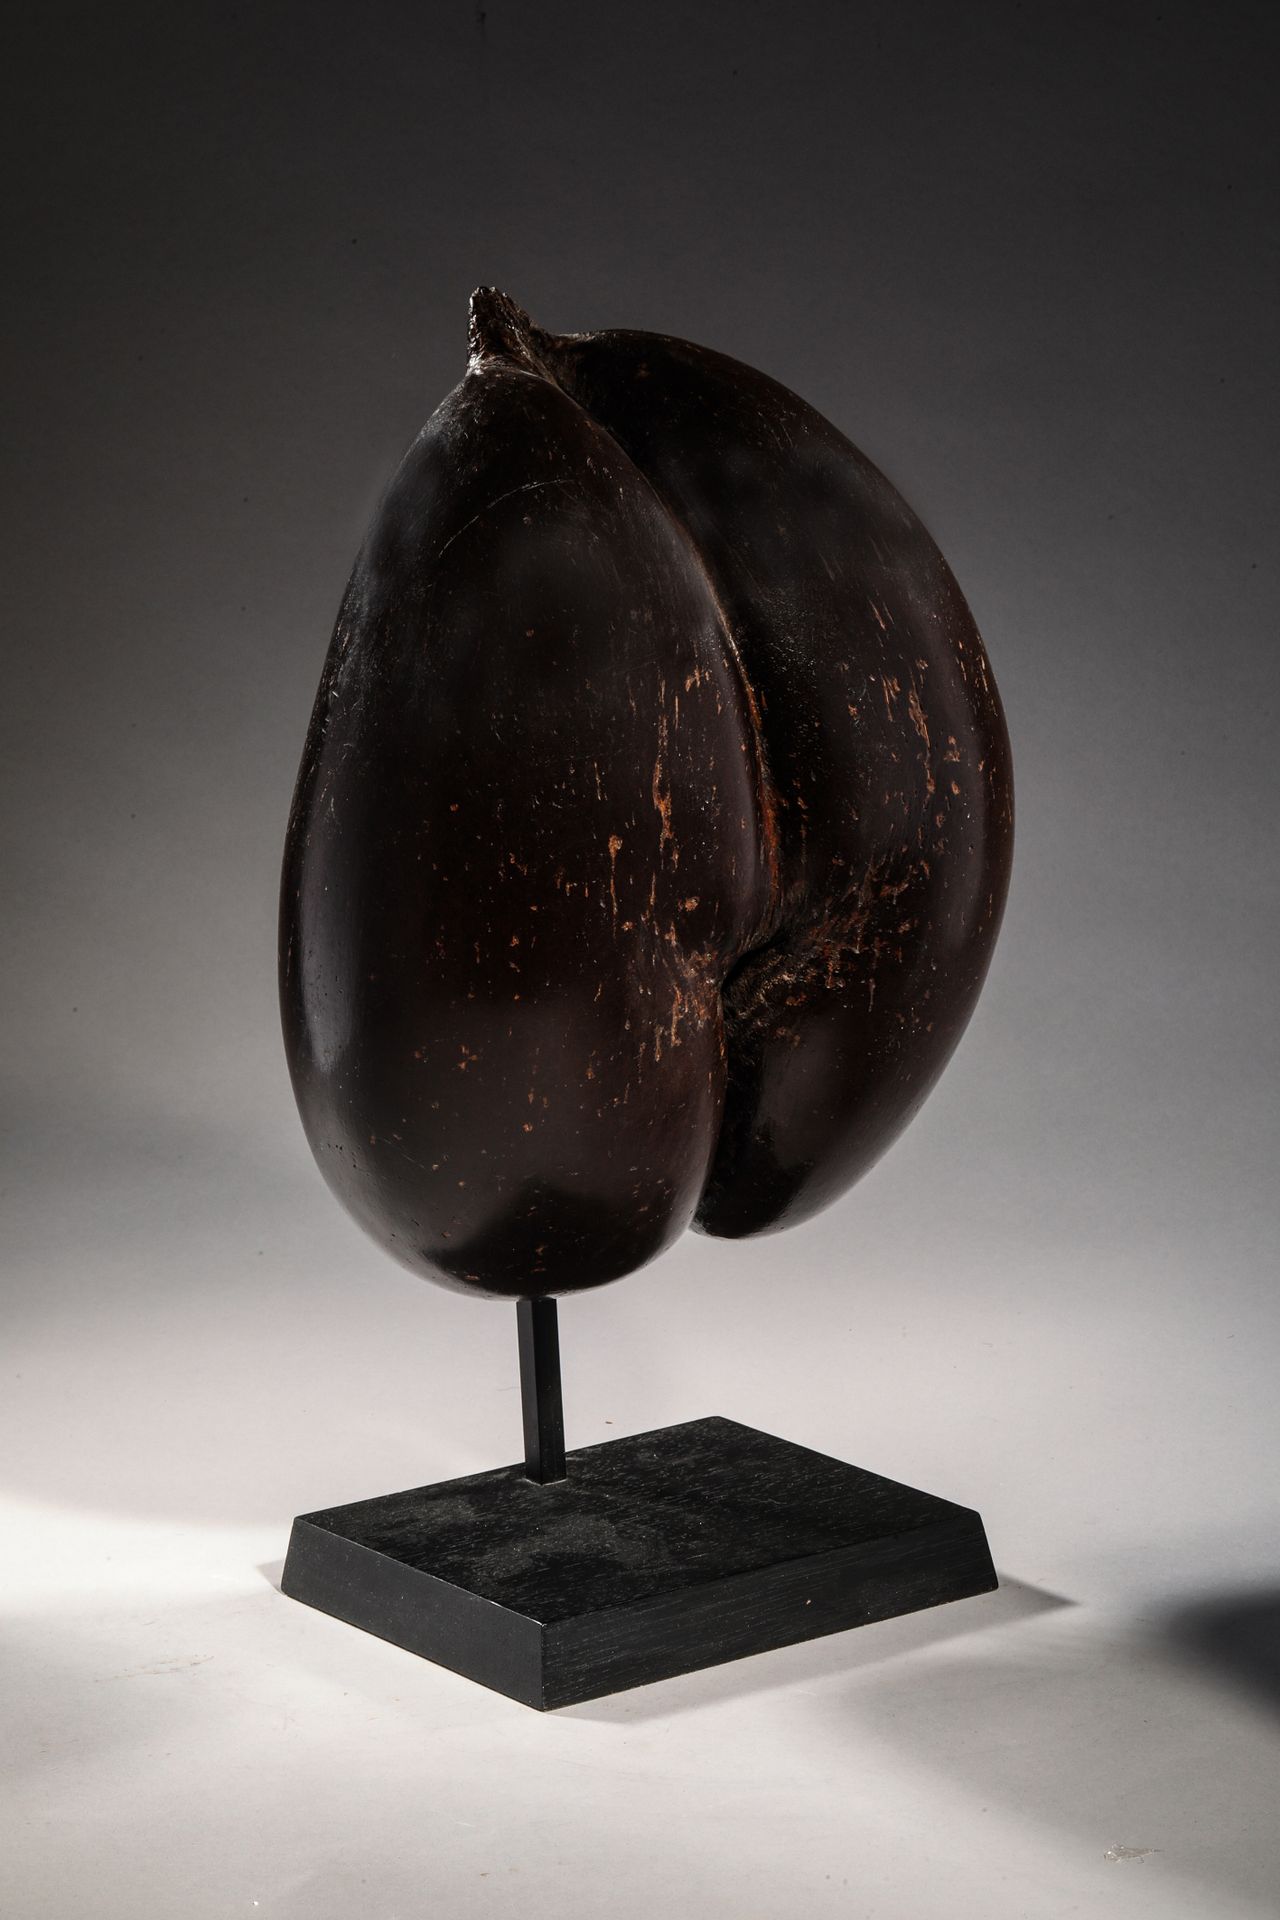 Null COCO-FESSE, fruit des palmiers de mer.
Seychelles XXe siècle
H. 32 cm